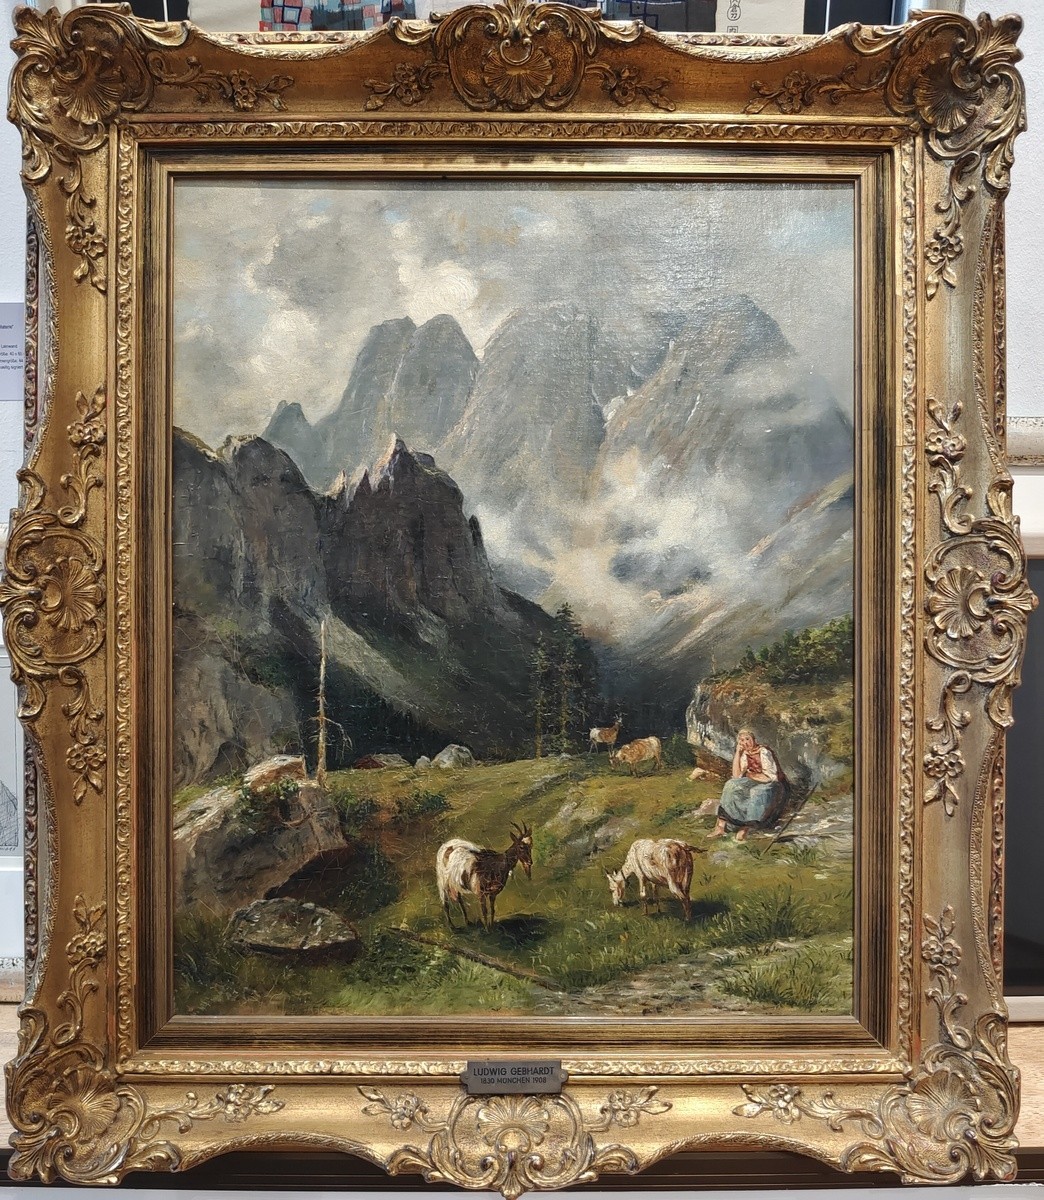 Gebhardt (1830 - 1908) "Die Ziegenhirtin"